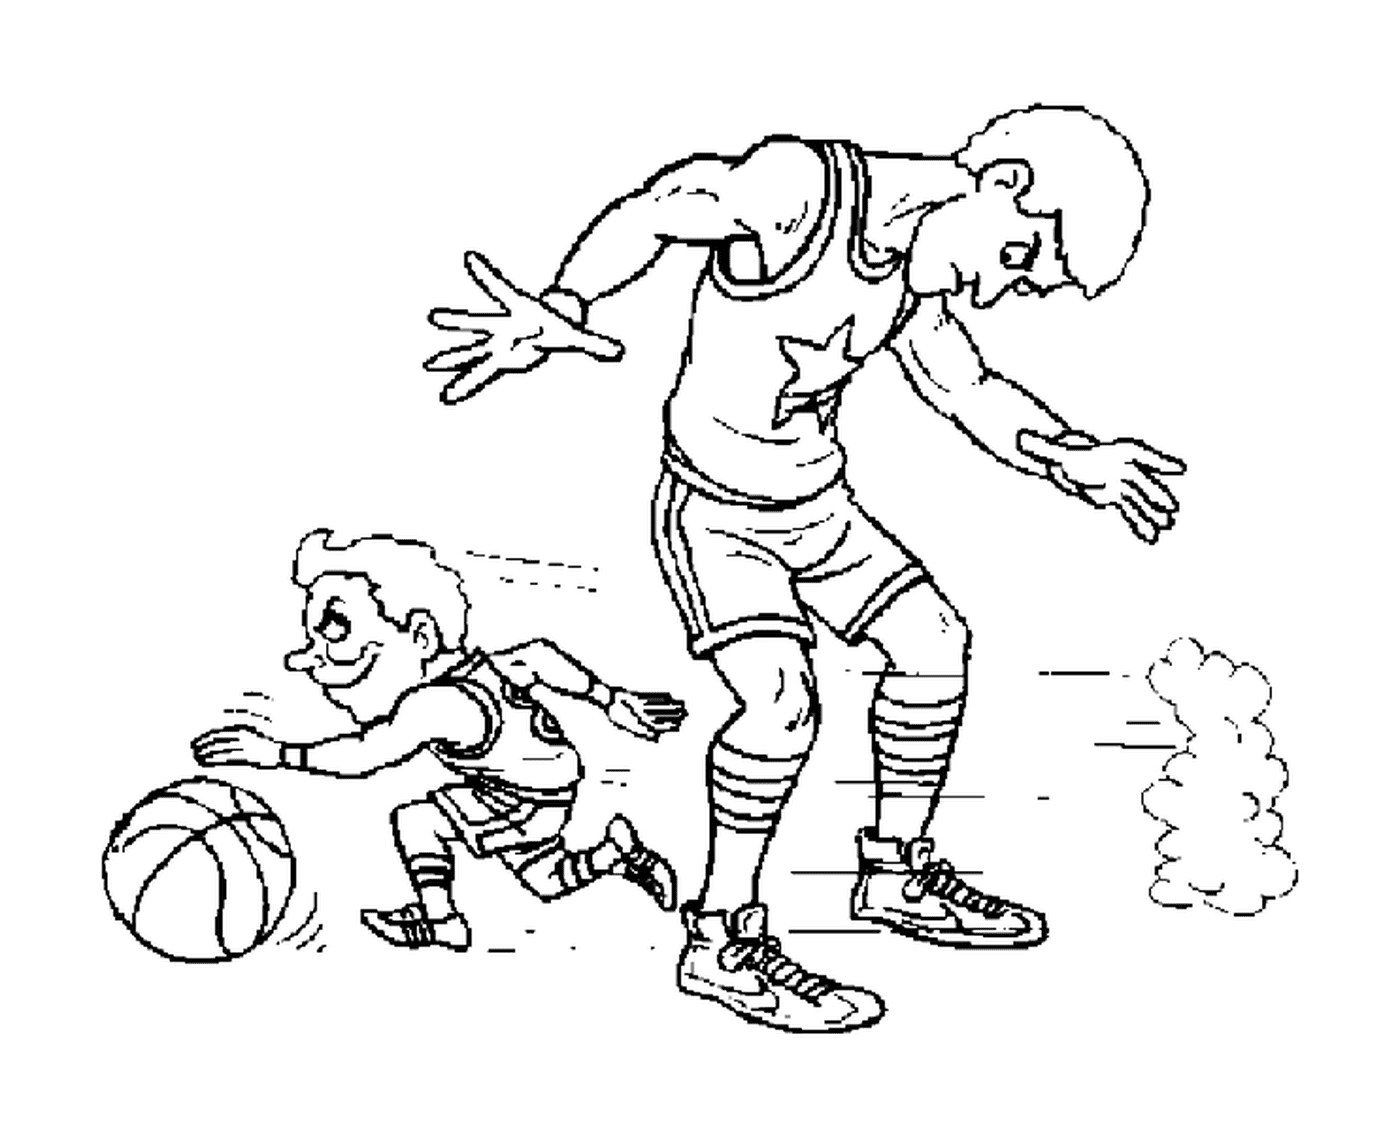  एक छोटा खिलाड़ी अन्य खिलाड़ी के पैरों के नीचे चला जाता है 